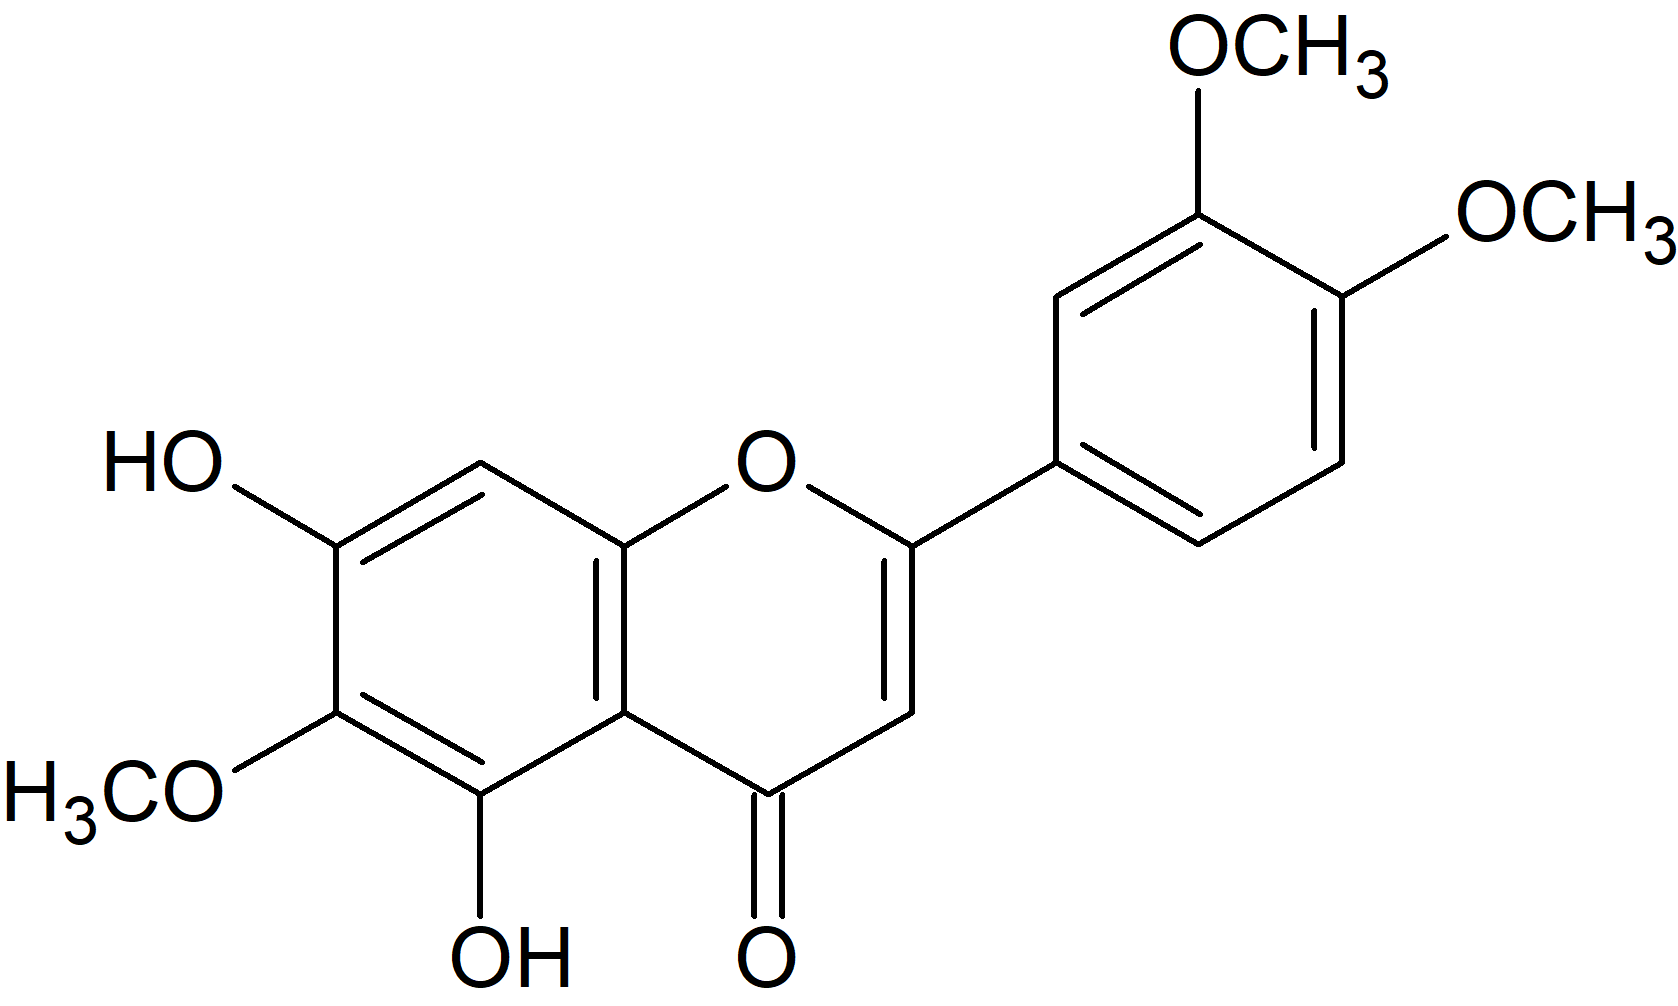 5,7-Dihydroxy-6,3',4'-trimethoxyflavone